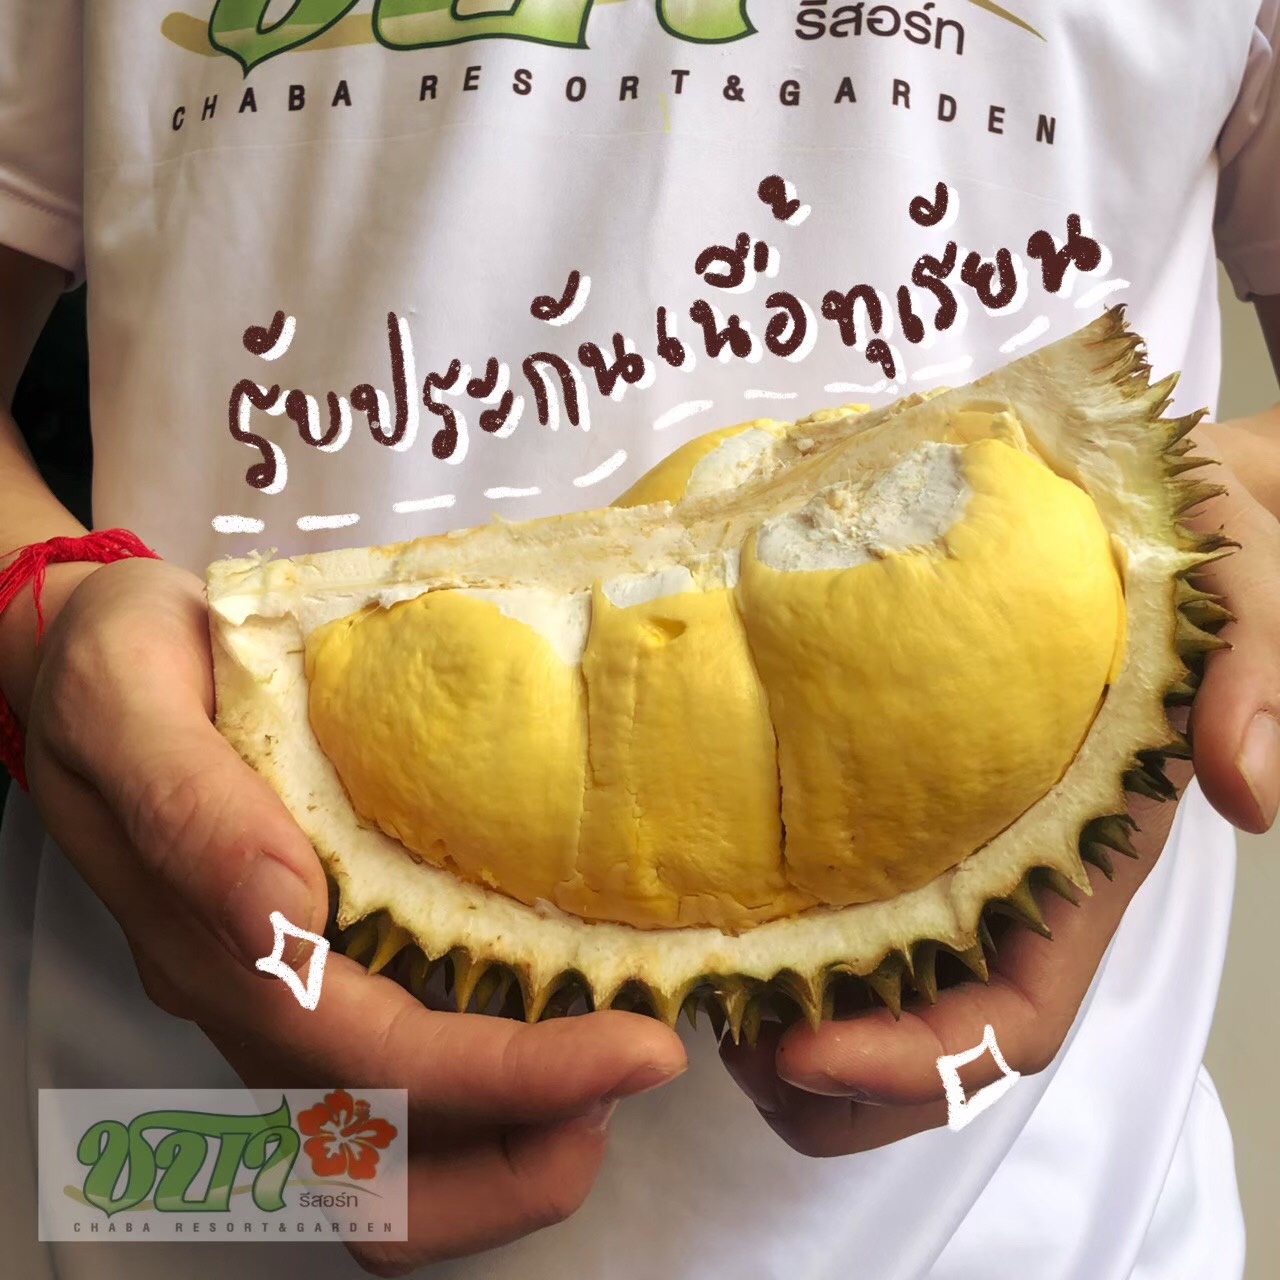 เปิดภาพ! ทุเรียนจันทบุรี ส่งออกของจริง เหลืองทอง-เนื้อเนียน สร้างรายได้ลดผลกระทบโควิด